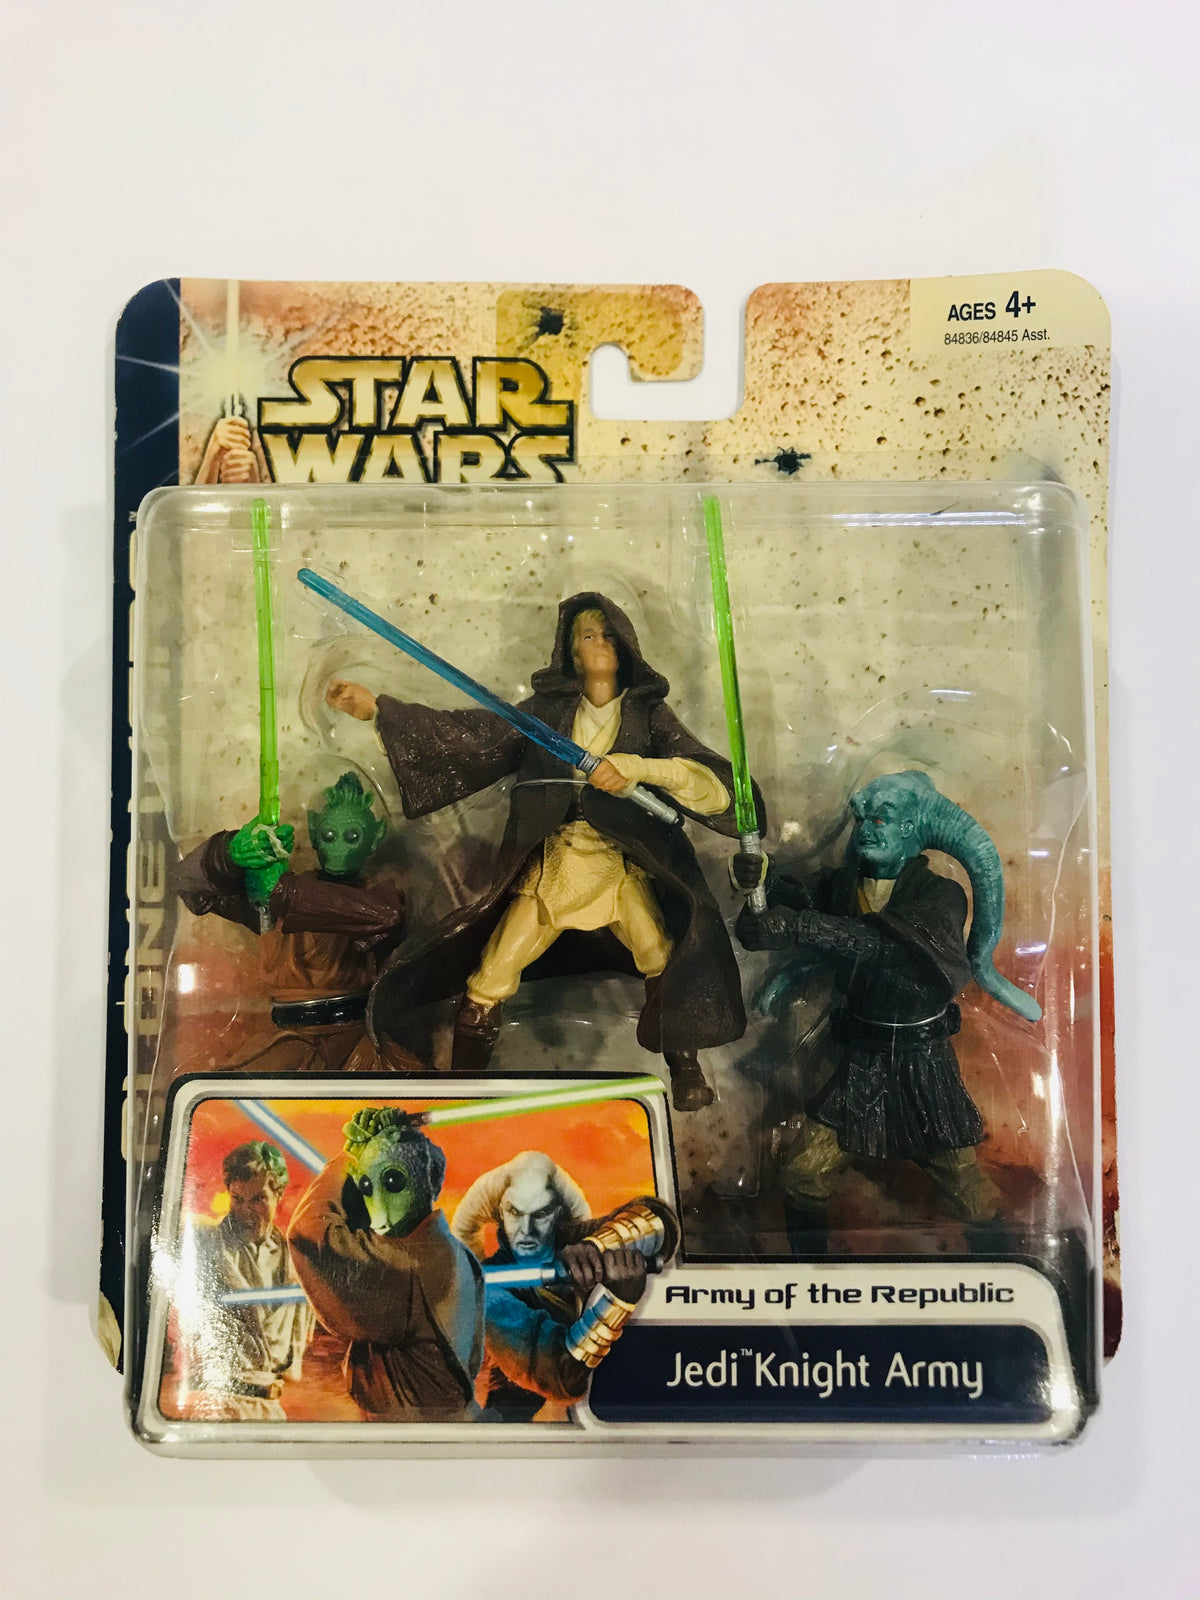 Jedi Khight Army